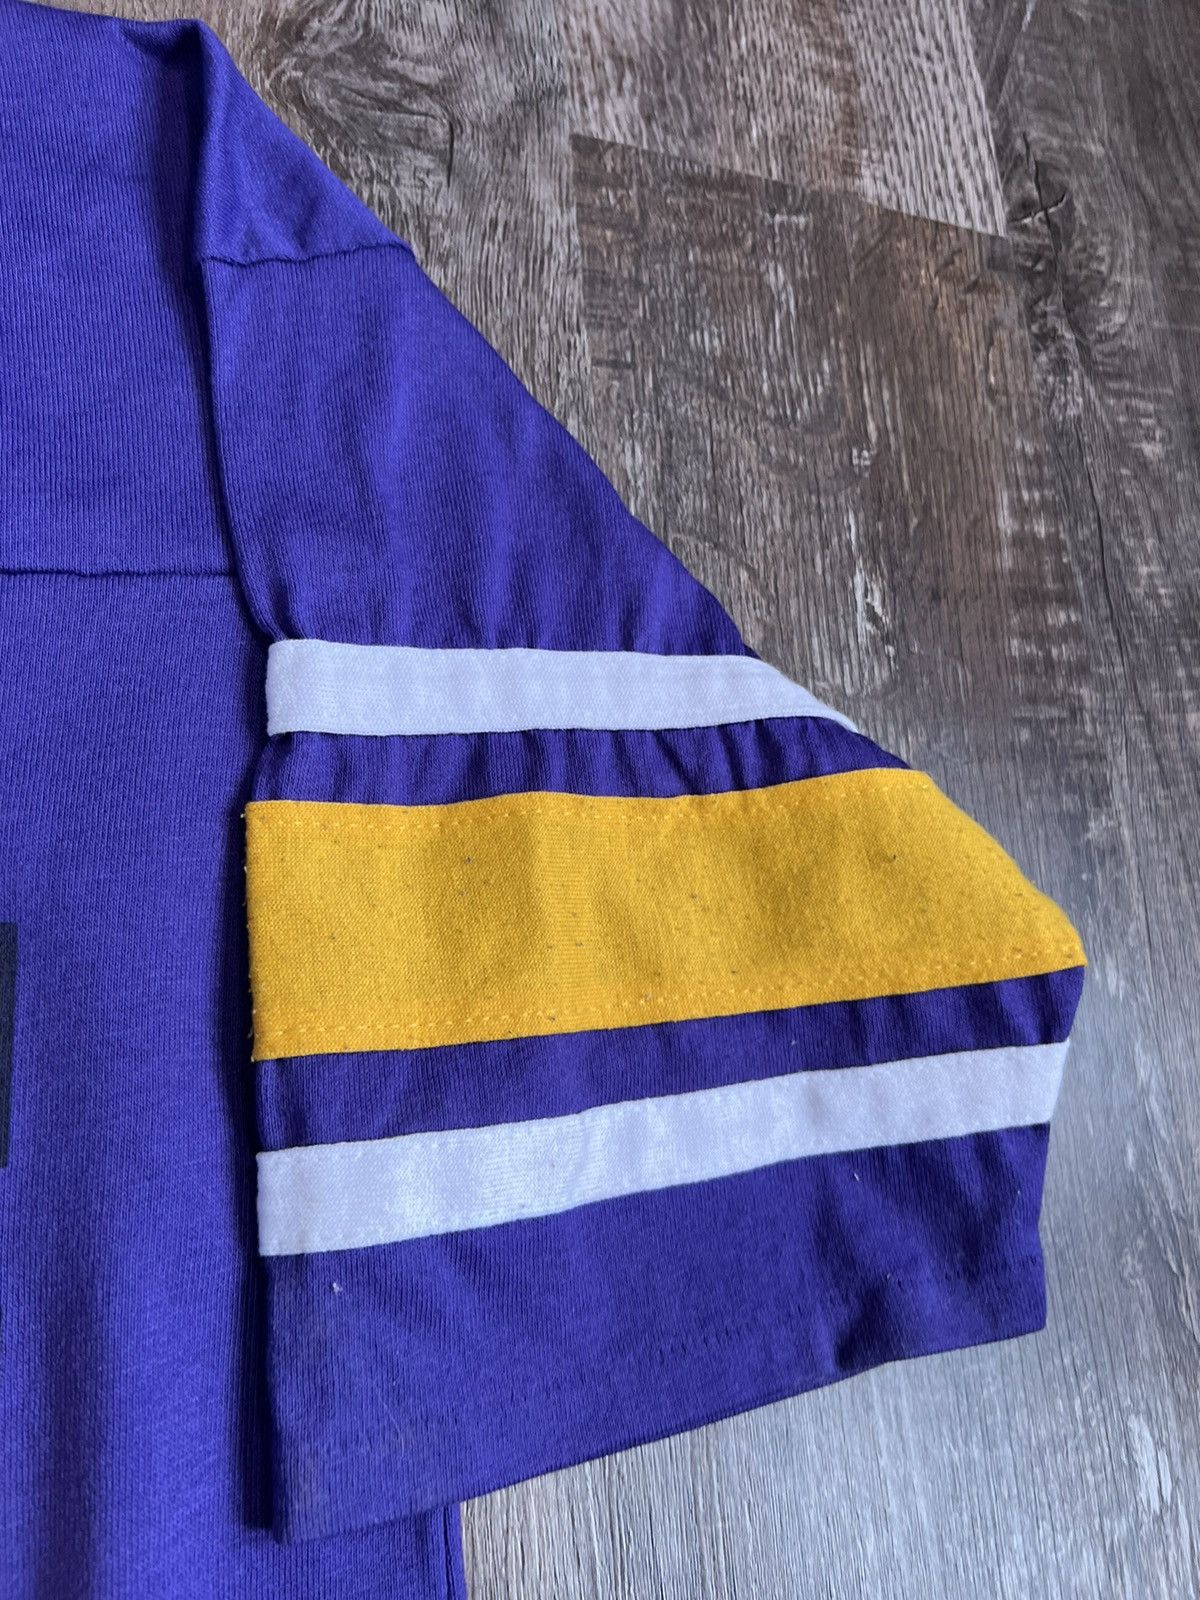 Vintage Vintage Minnesota Vikings Shirt Size US L / EU 52-54 / 3 - 5 Thumbnail